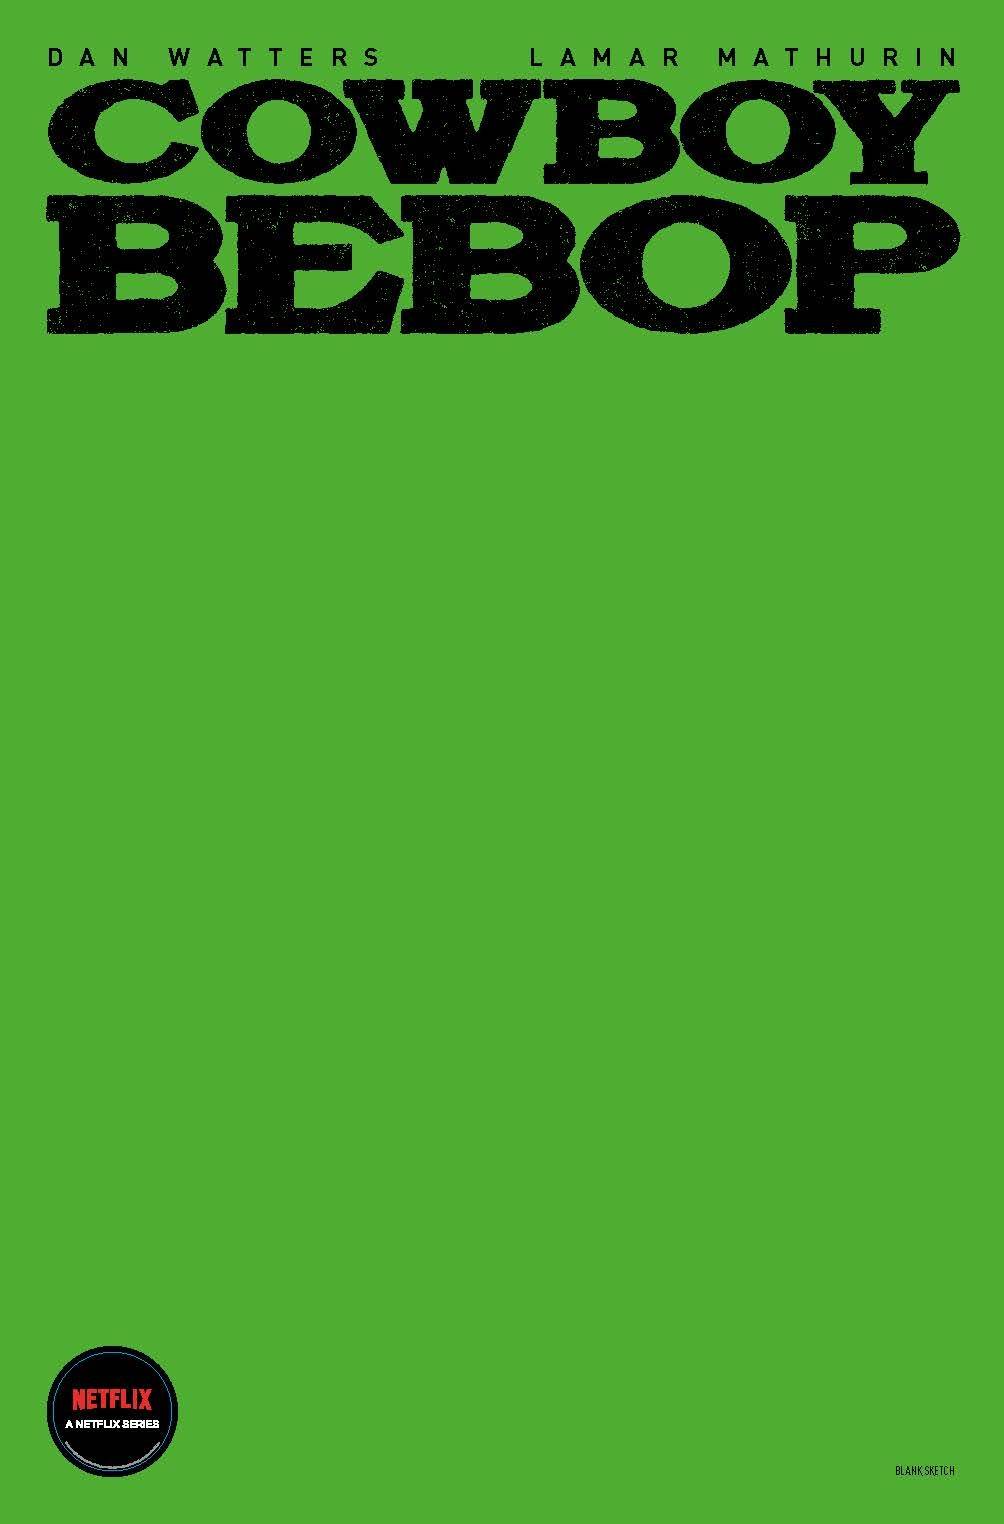 Cowboy Bebop #1 Blank Sketch Cover